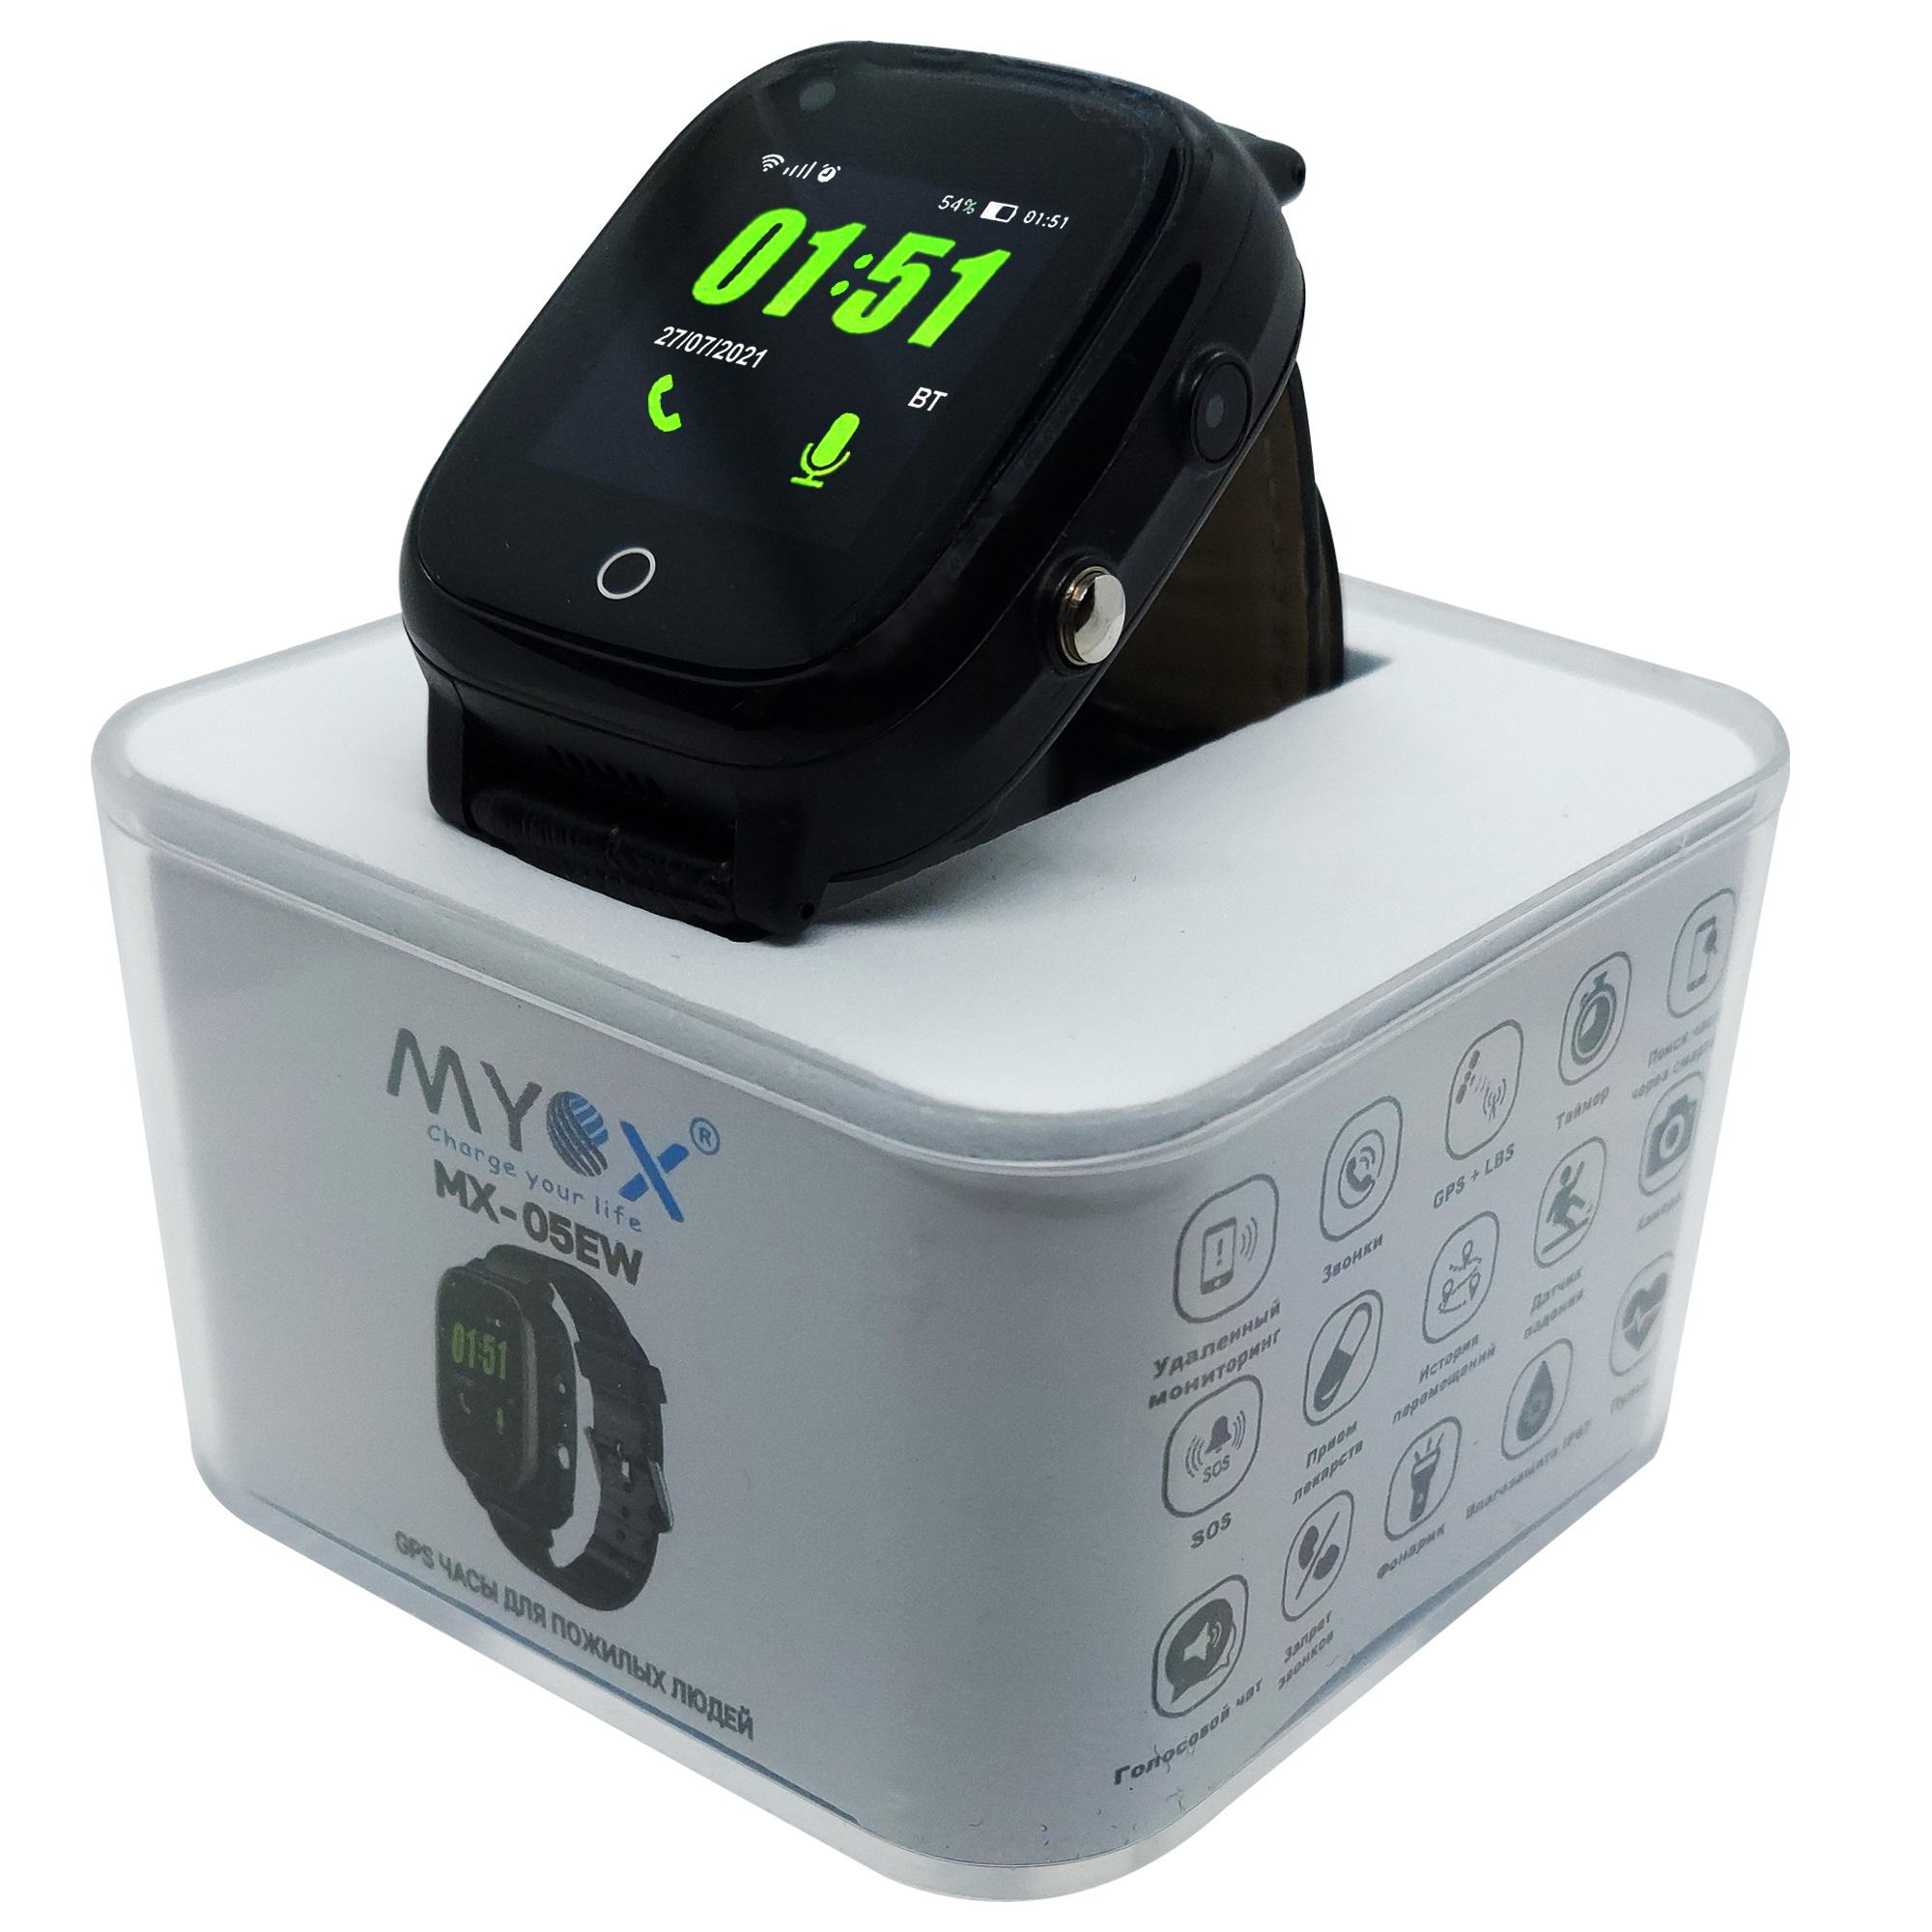 GPS часы для пожилых людей Myox MX-05EWB 4 G с видеозвонком